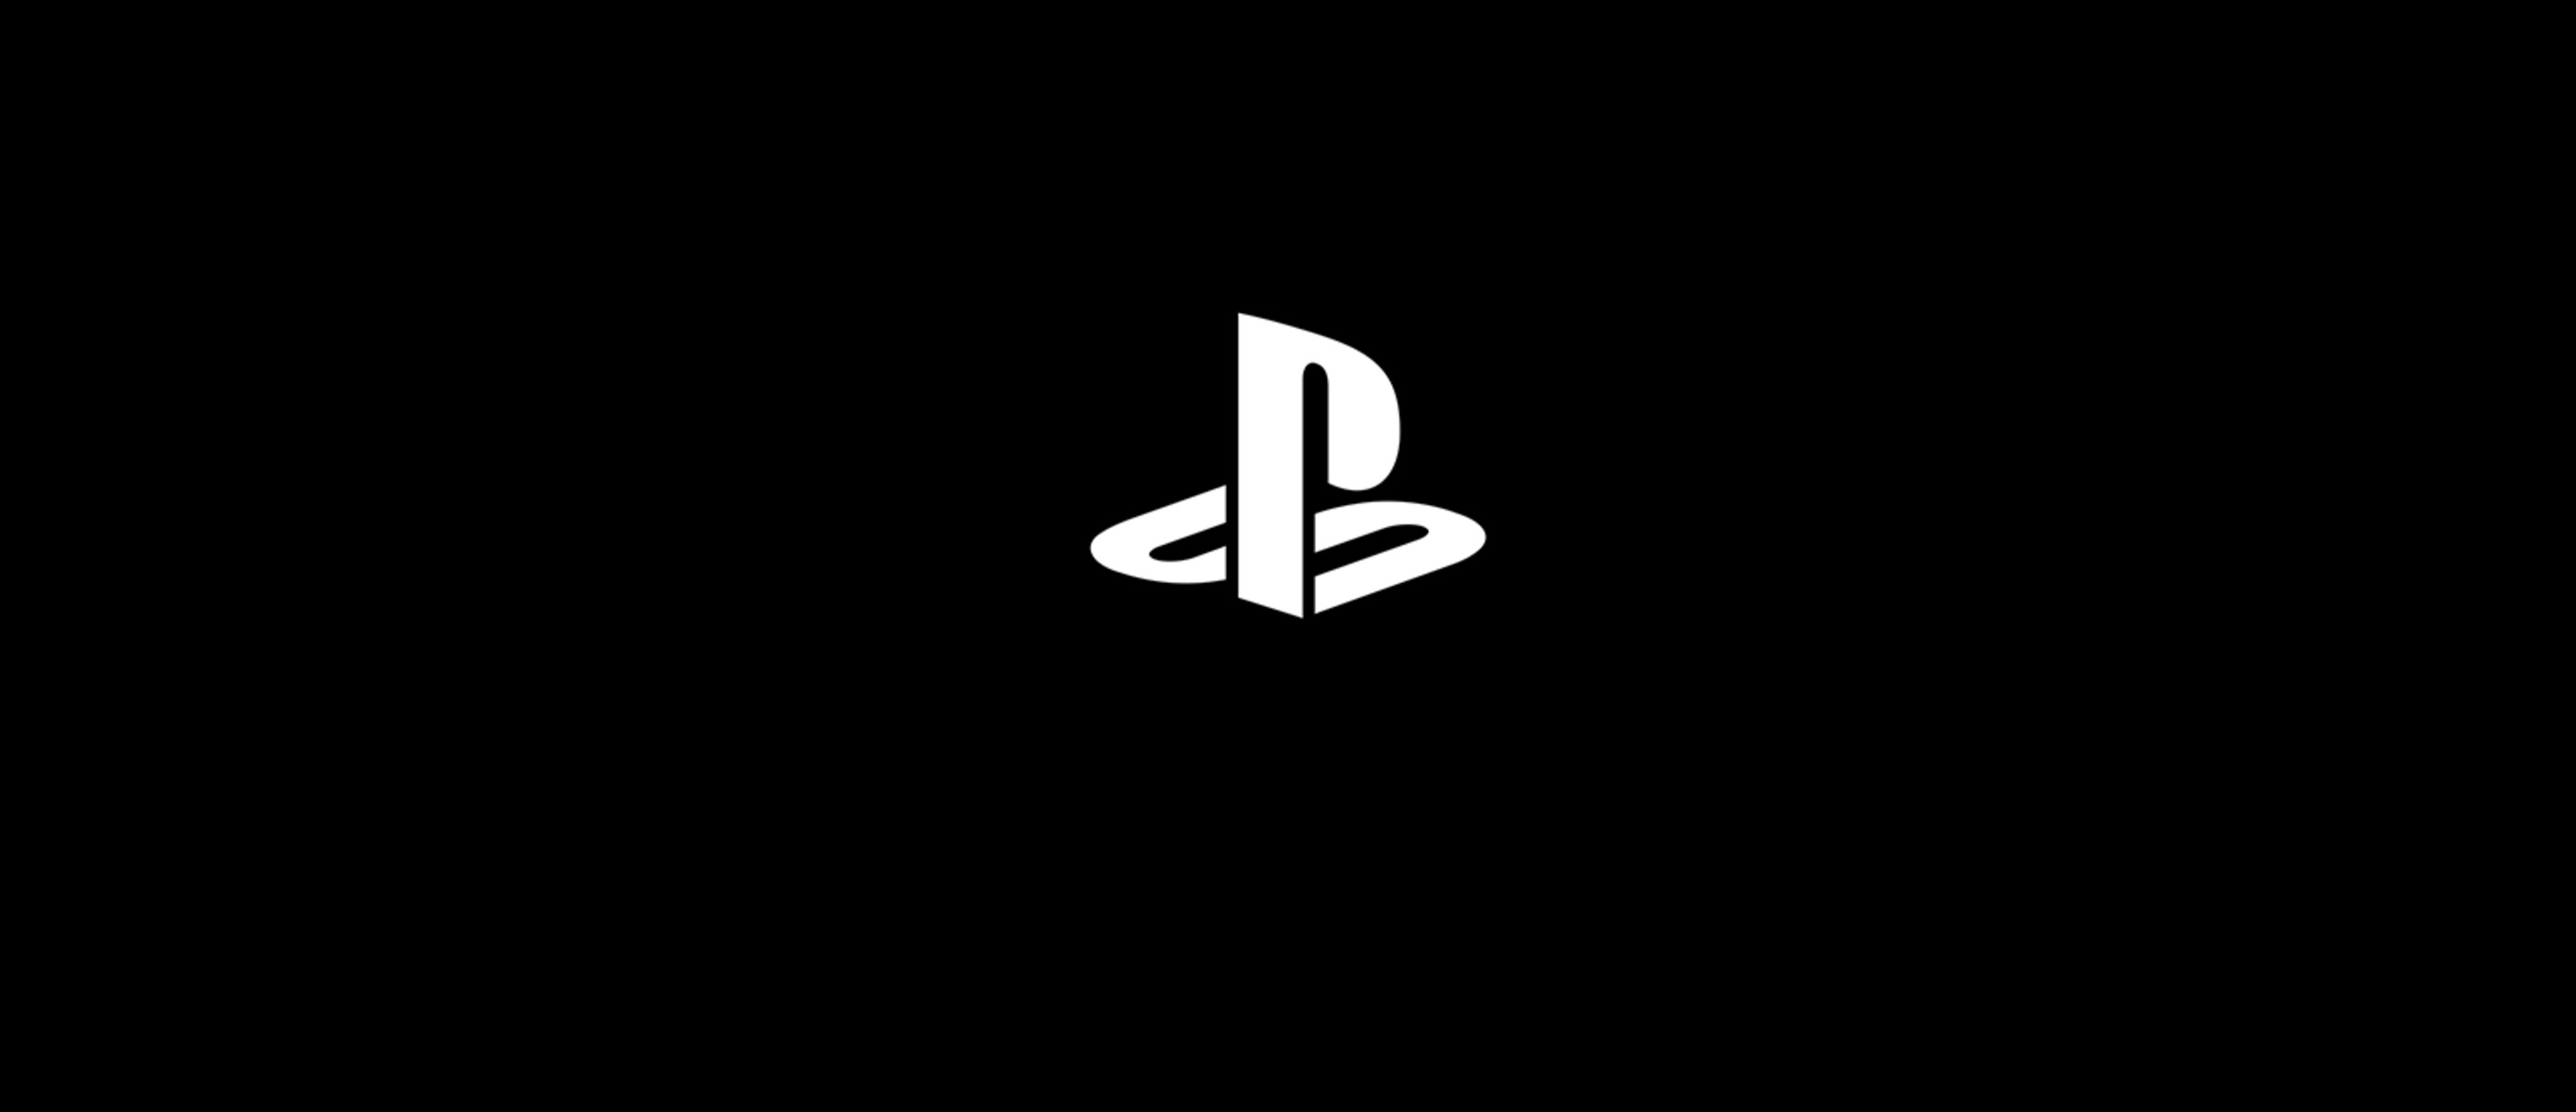 Логотип пс. Логотип плейстейшен 4. Знак Sony PLAYSTATION. PLAYSTATION 5 логотип. PLAYSTATION надпись.